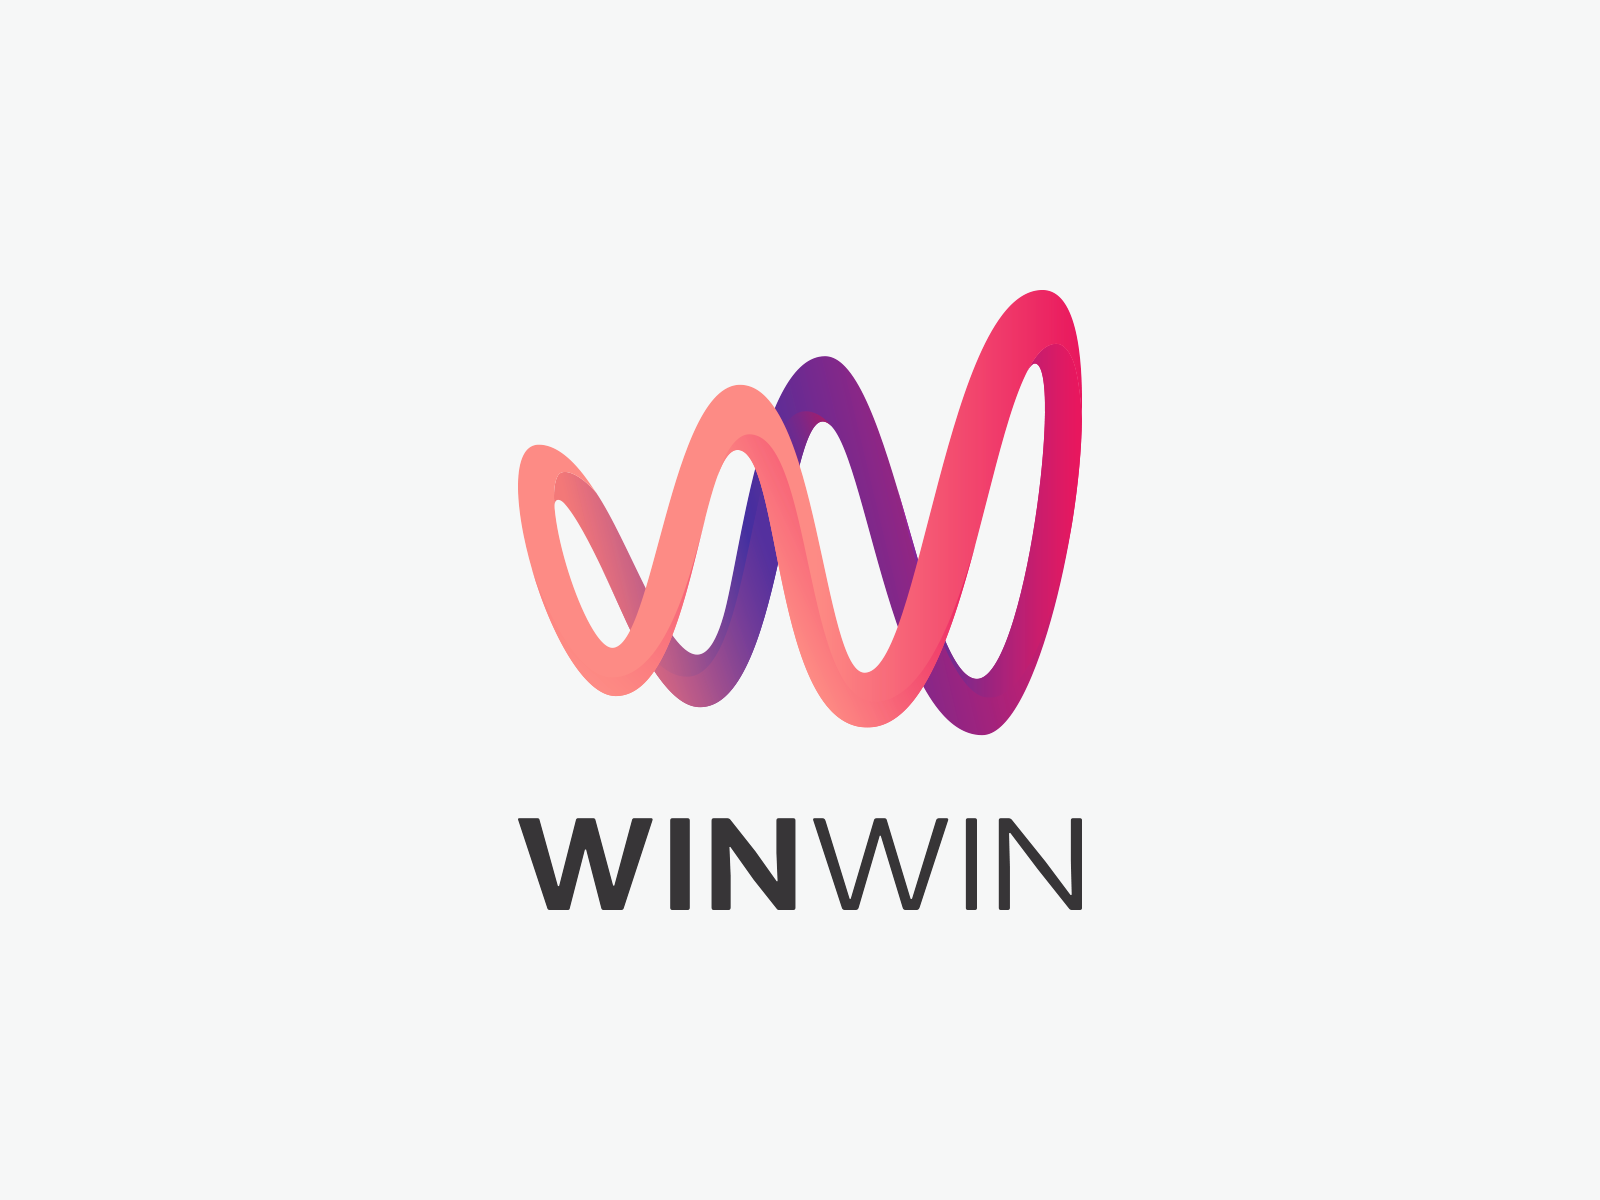 WinWin logo by Viktor Kan on Dribbble